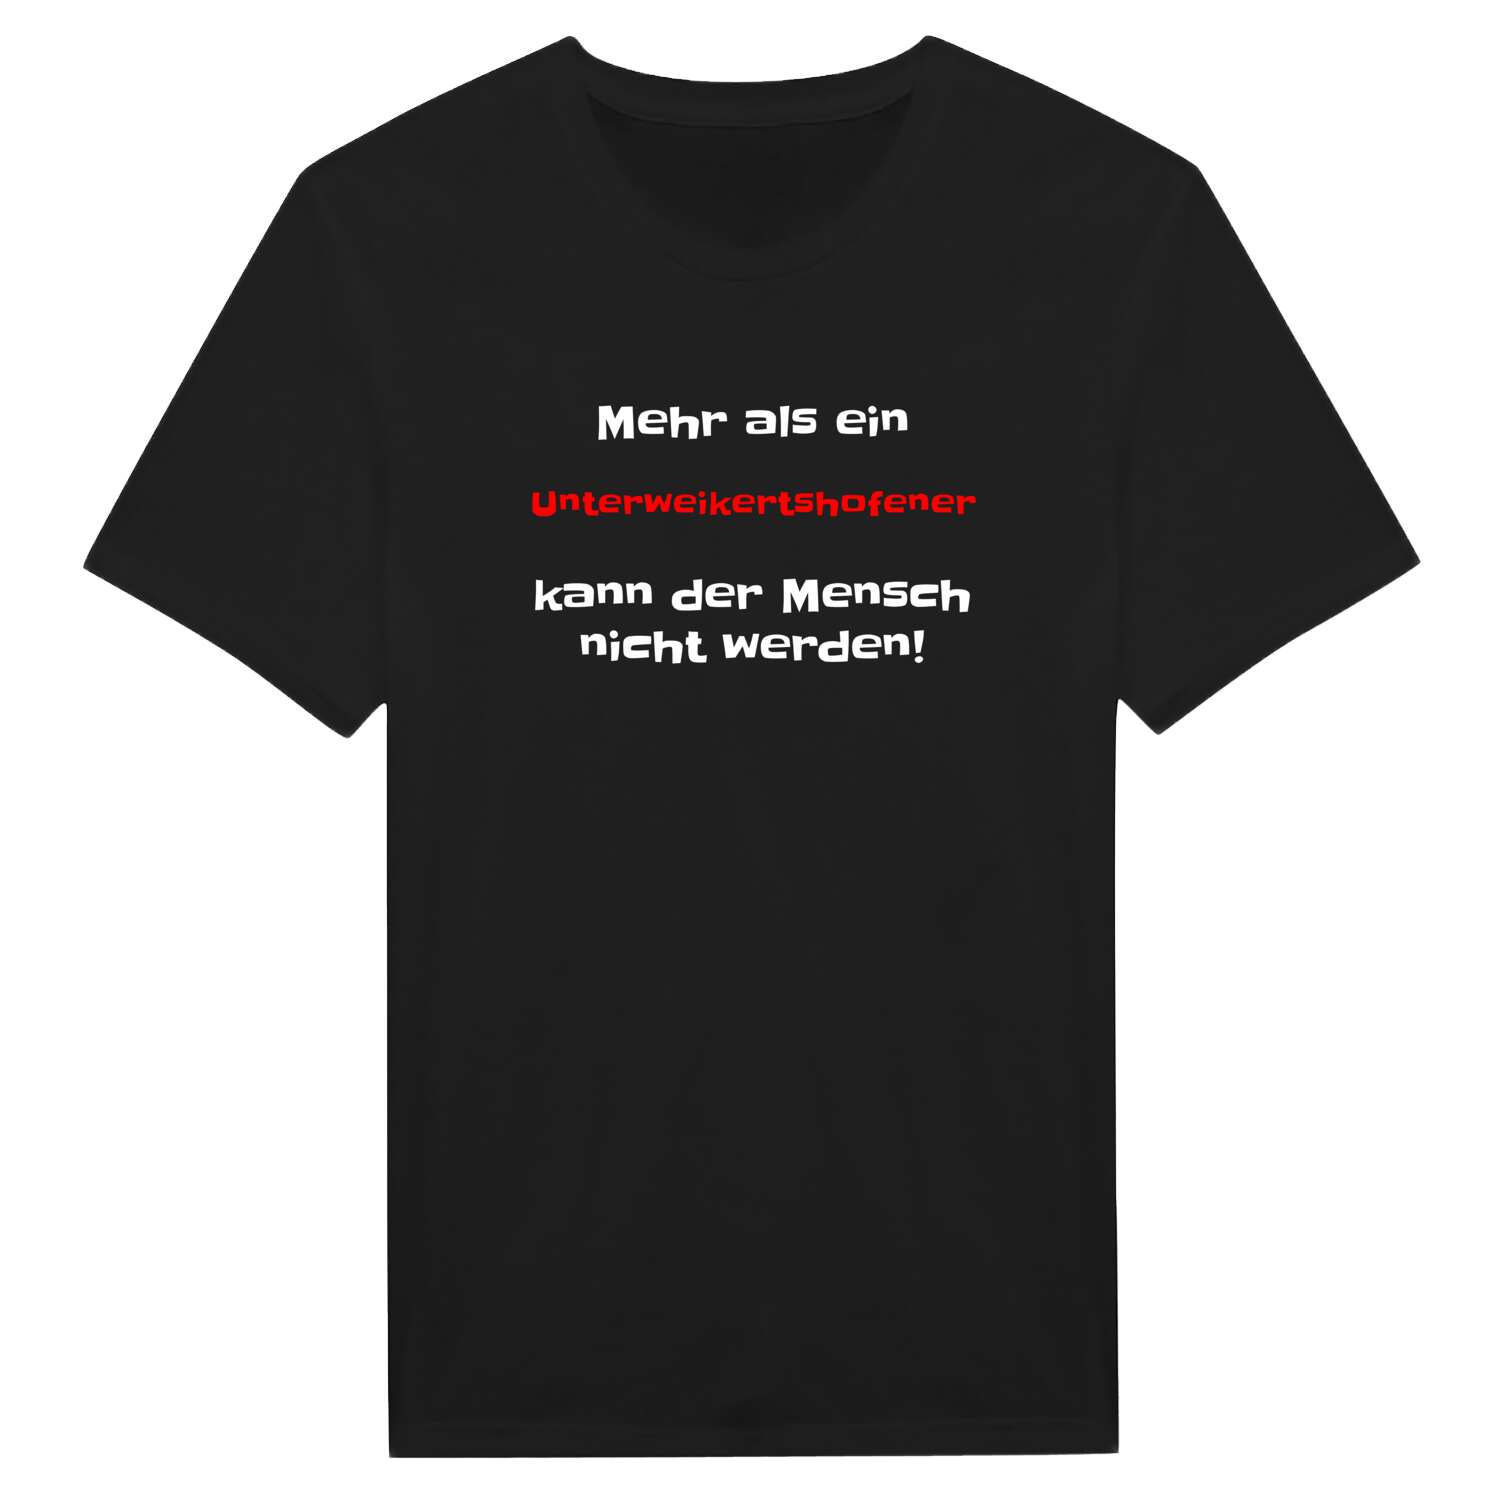 Unterweikertshofen T-Shirt »Mehr als ein«